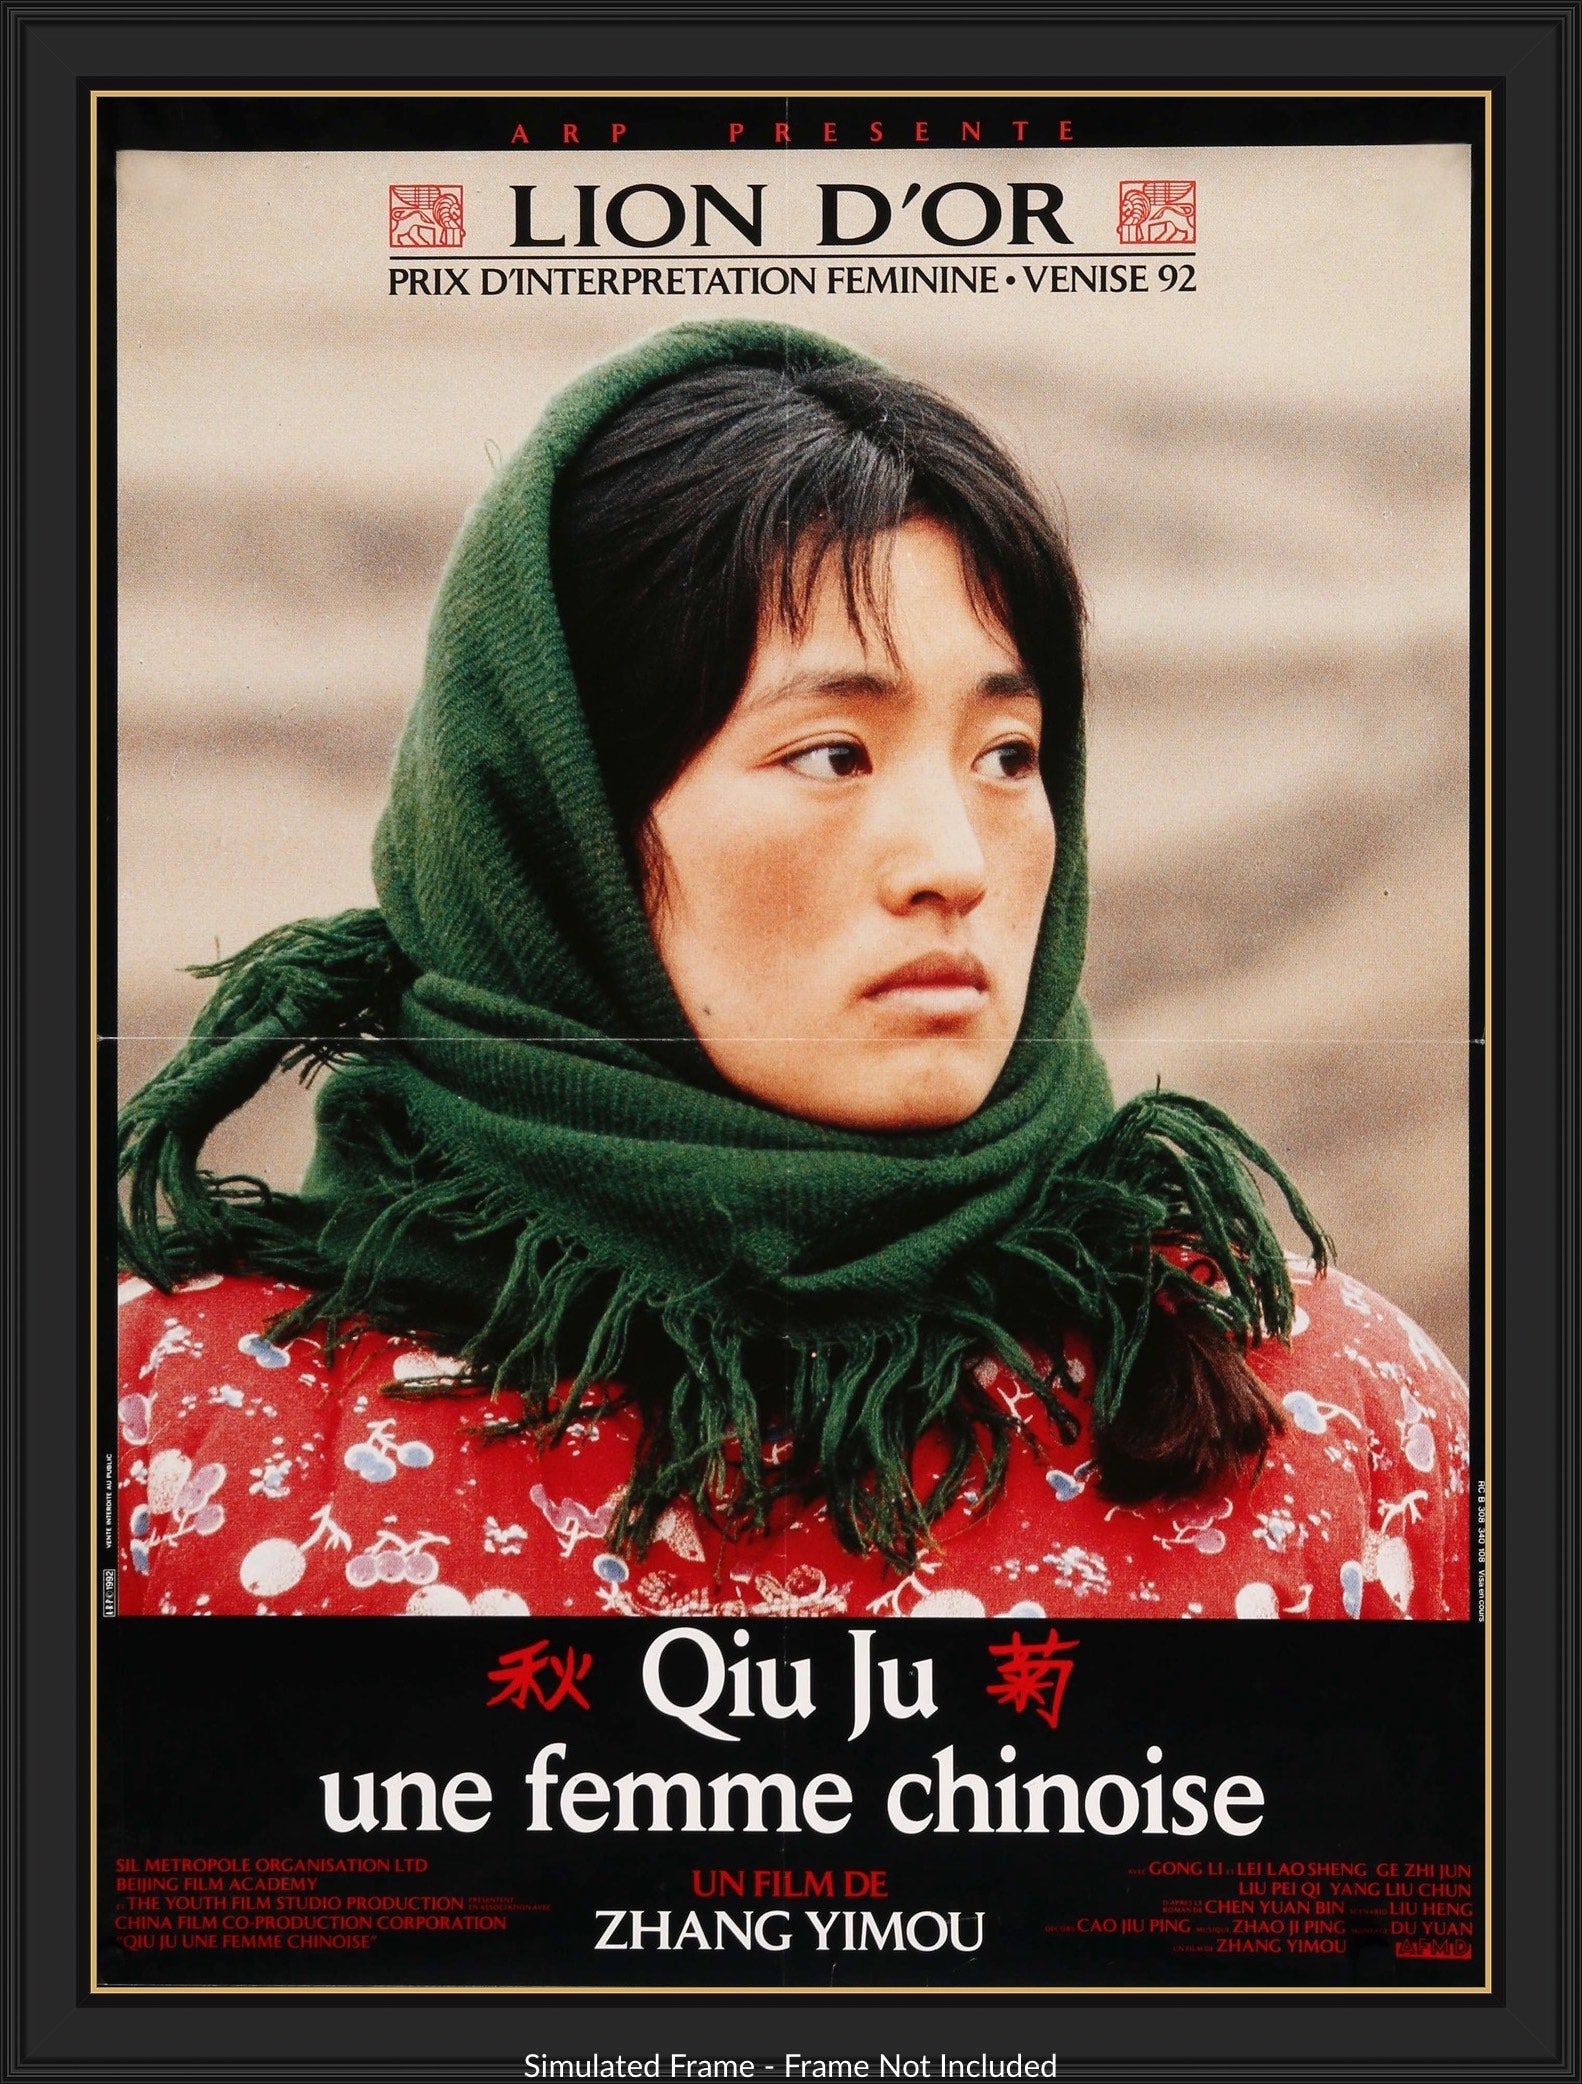 Story of Qiu Ju (1992) original movie poster for sale at Original Film Art